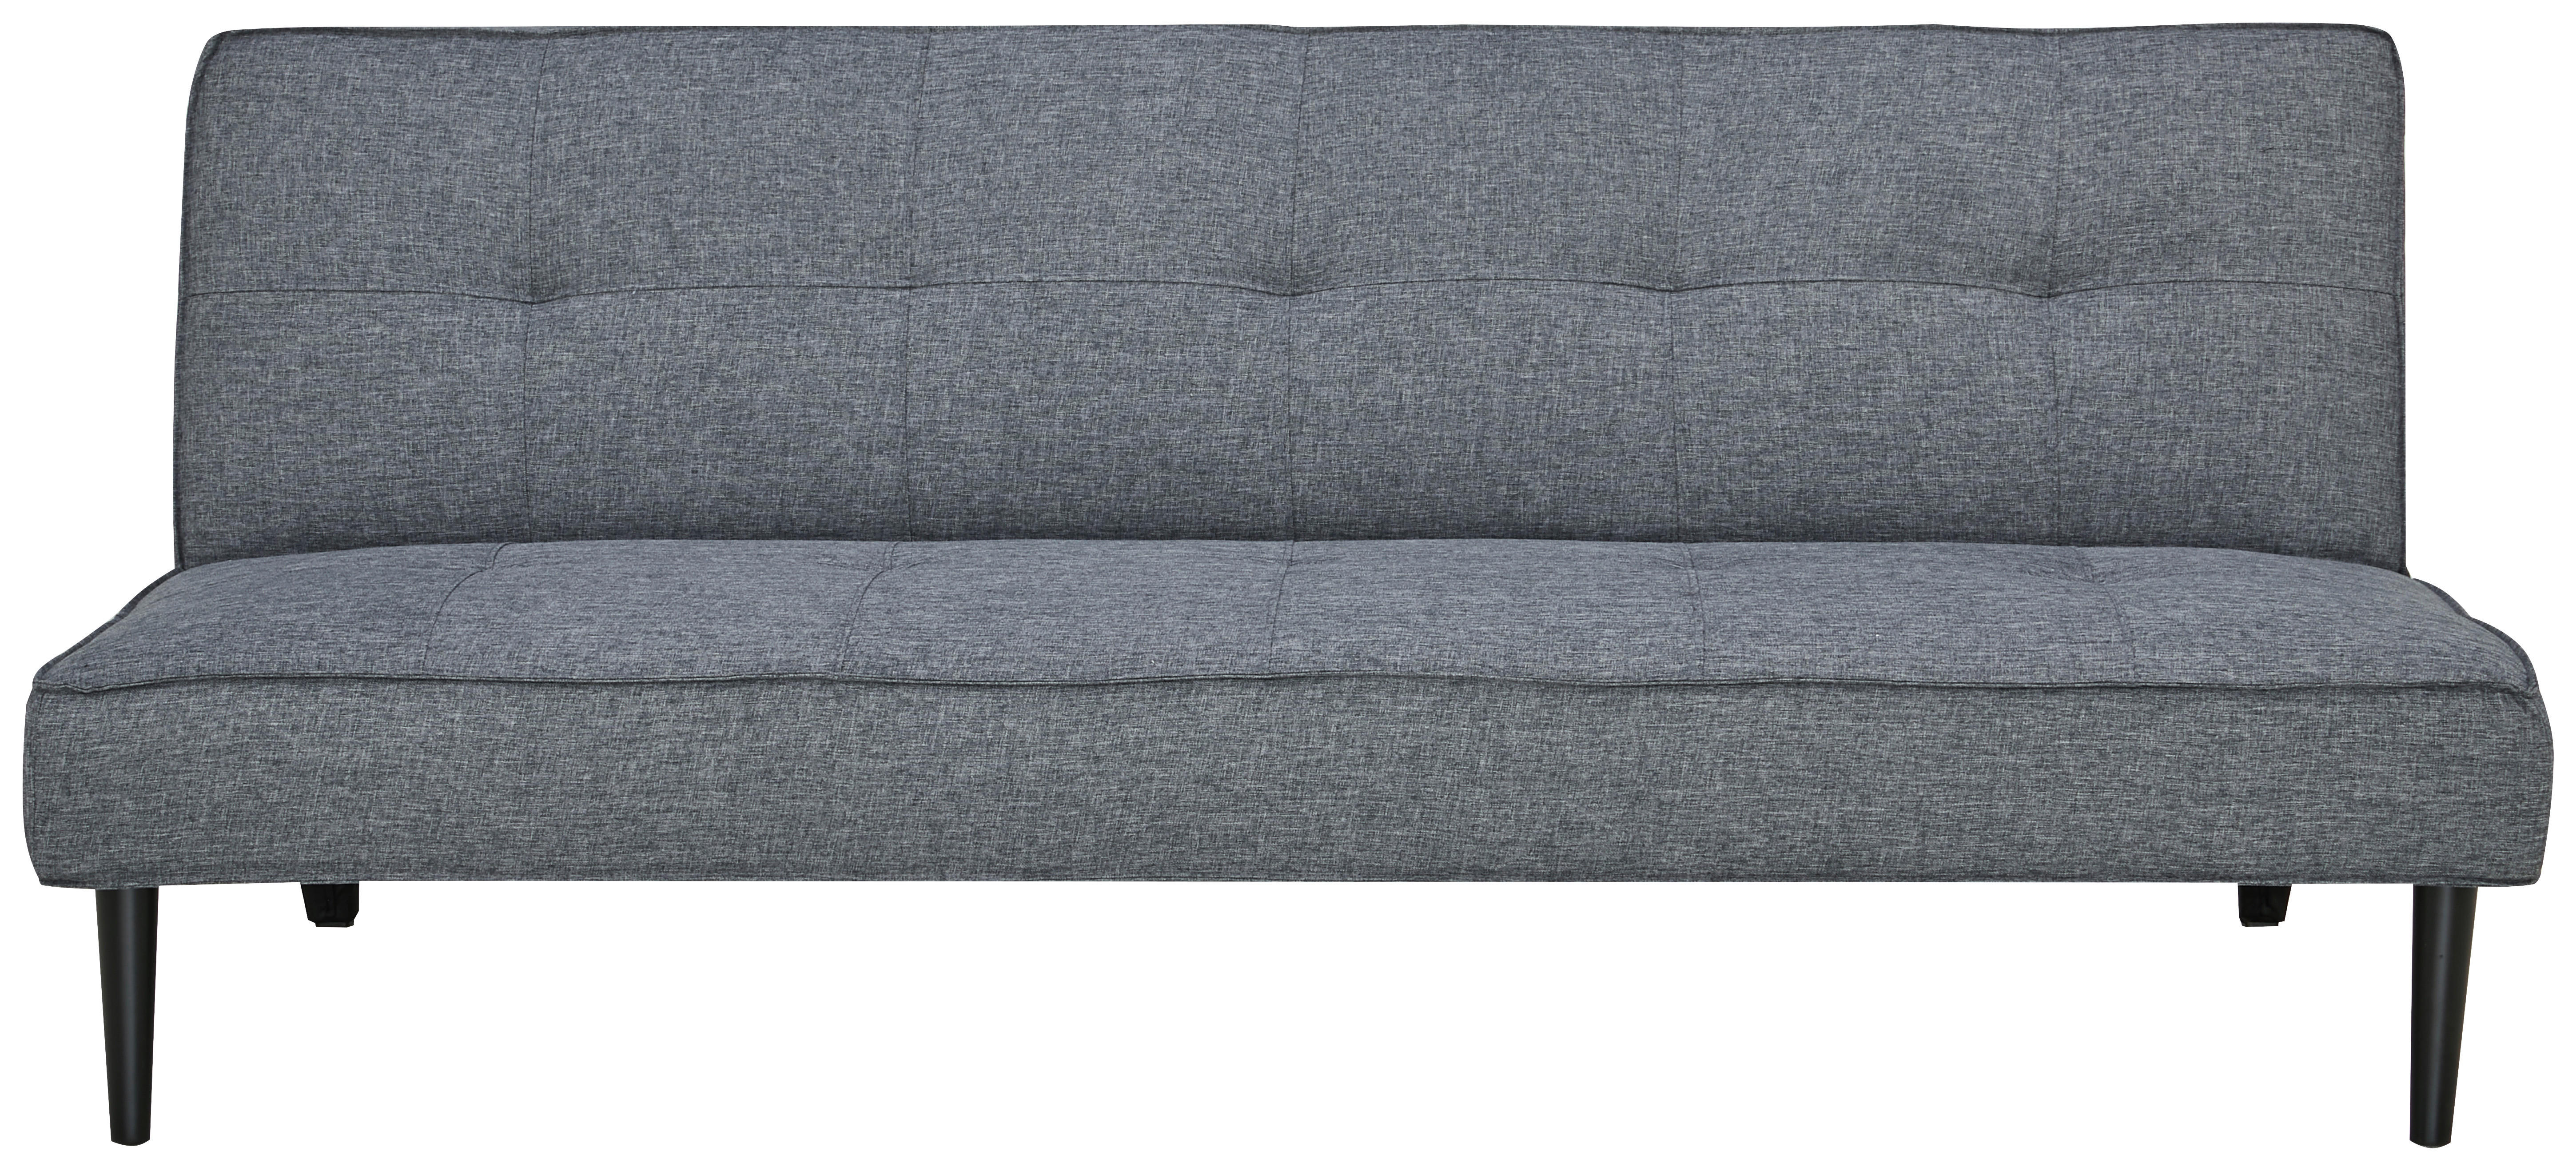 CANAPEA EXTENSIBILĂ textil gri închis  - gri închis/negru, Design, textil (180/77/93cm) - Carryhome